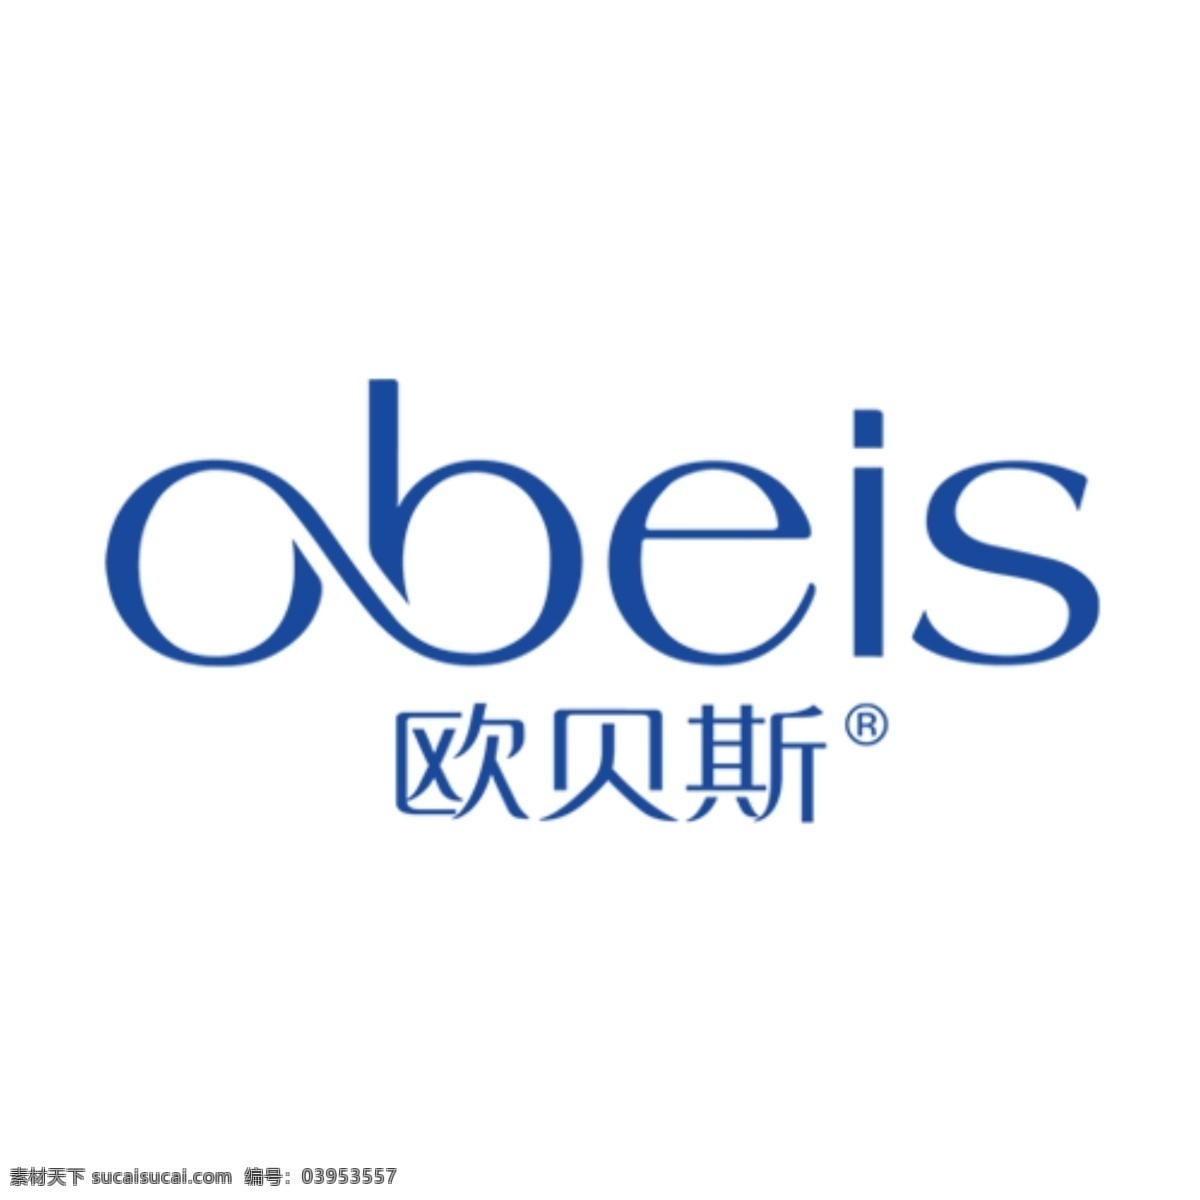 欧 贝斯 logo 安哲南明 化妆品 进口护肤 彩妆 欧贝斯 标志 矢量 vi logo设计